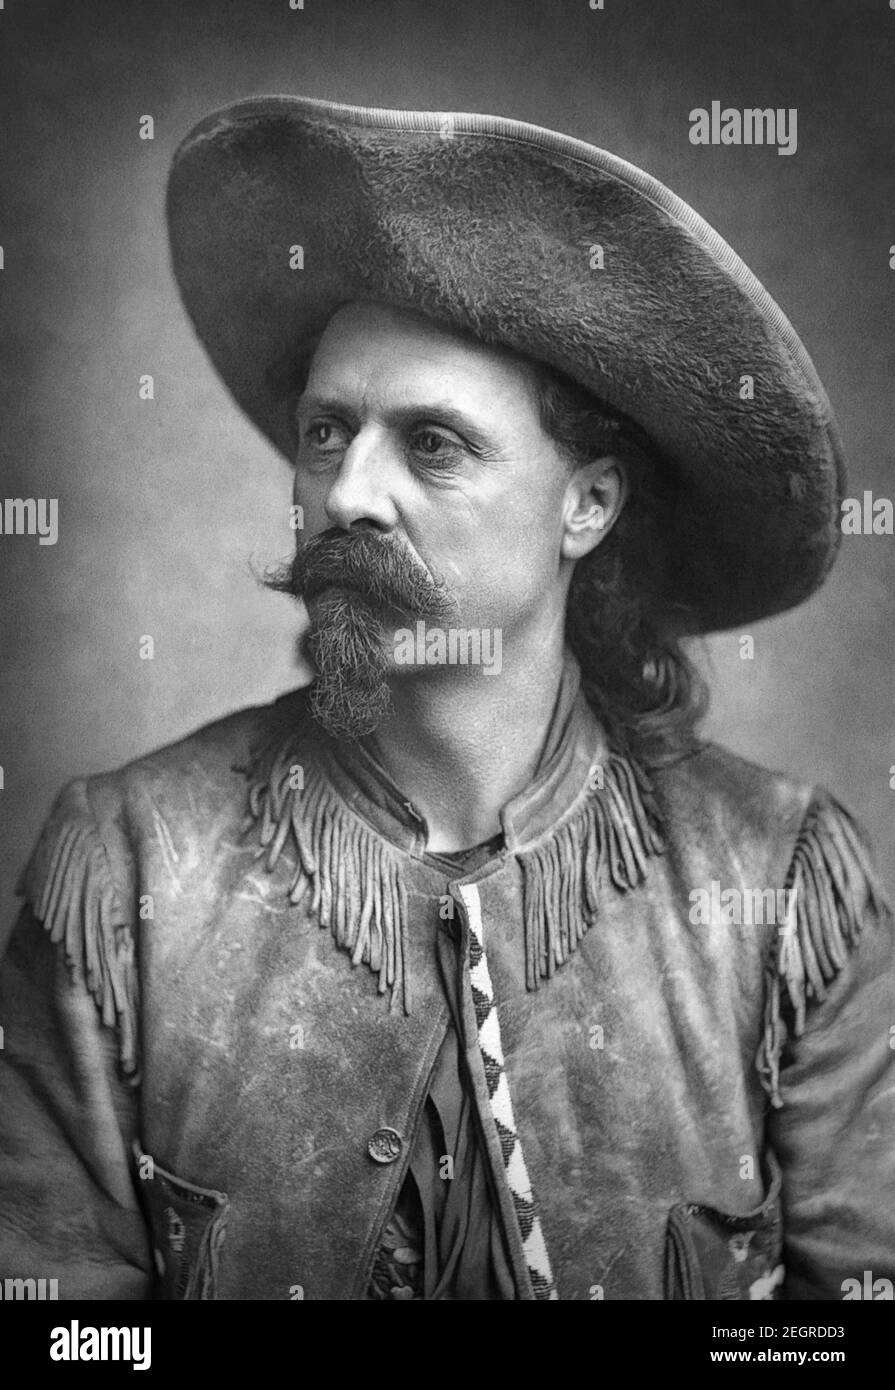 William Frederick 'Buffalo Bill' Cody (1846–1917), amerikanischer Soldat, Bisonjäger und Showman, am besten bekannt für Buffalo Bills Wild West-Show, in einem Fotoportrait von 1887. Stockfoto